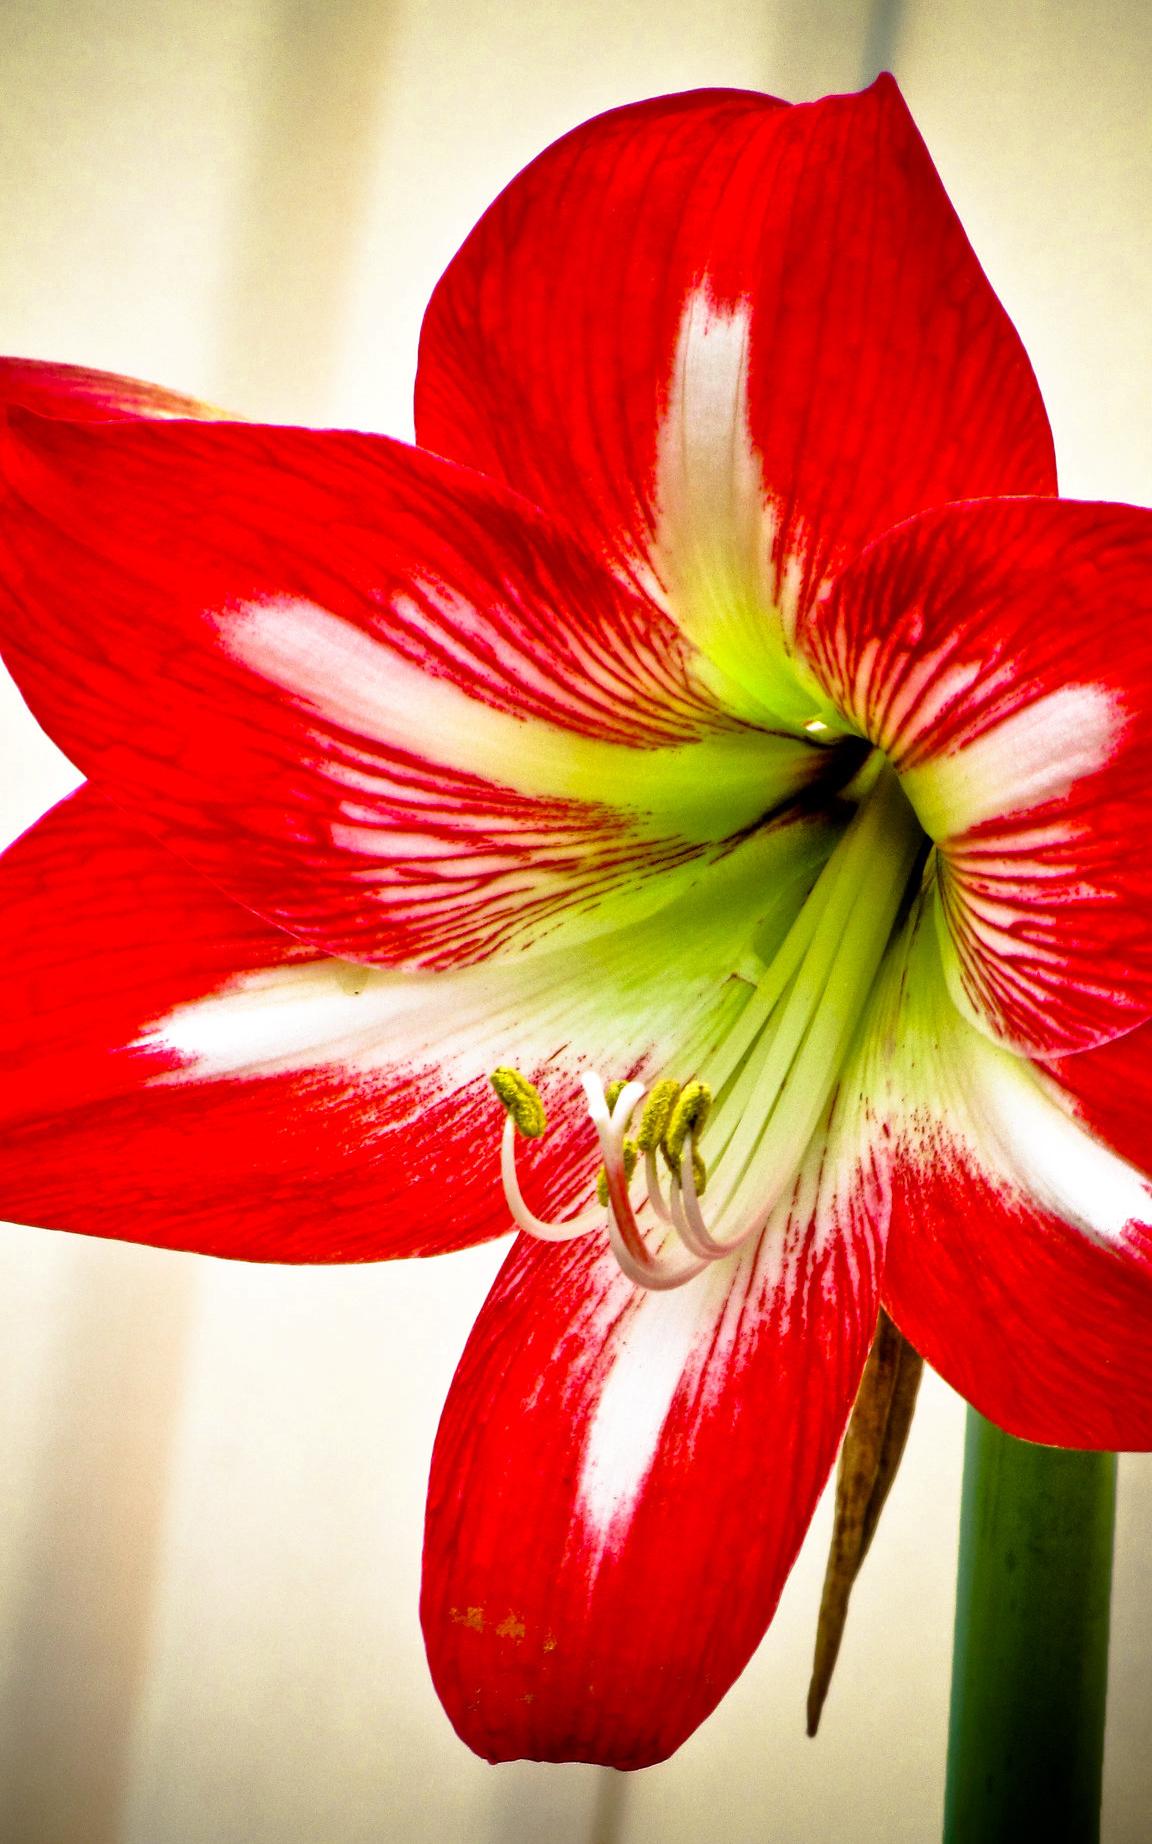 Hoa loa kèn có ý nghĩa gì? Cách trồng và chăm sóc giúp hoa nở đẹp - 22